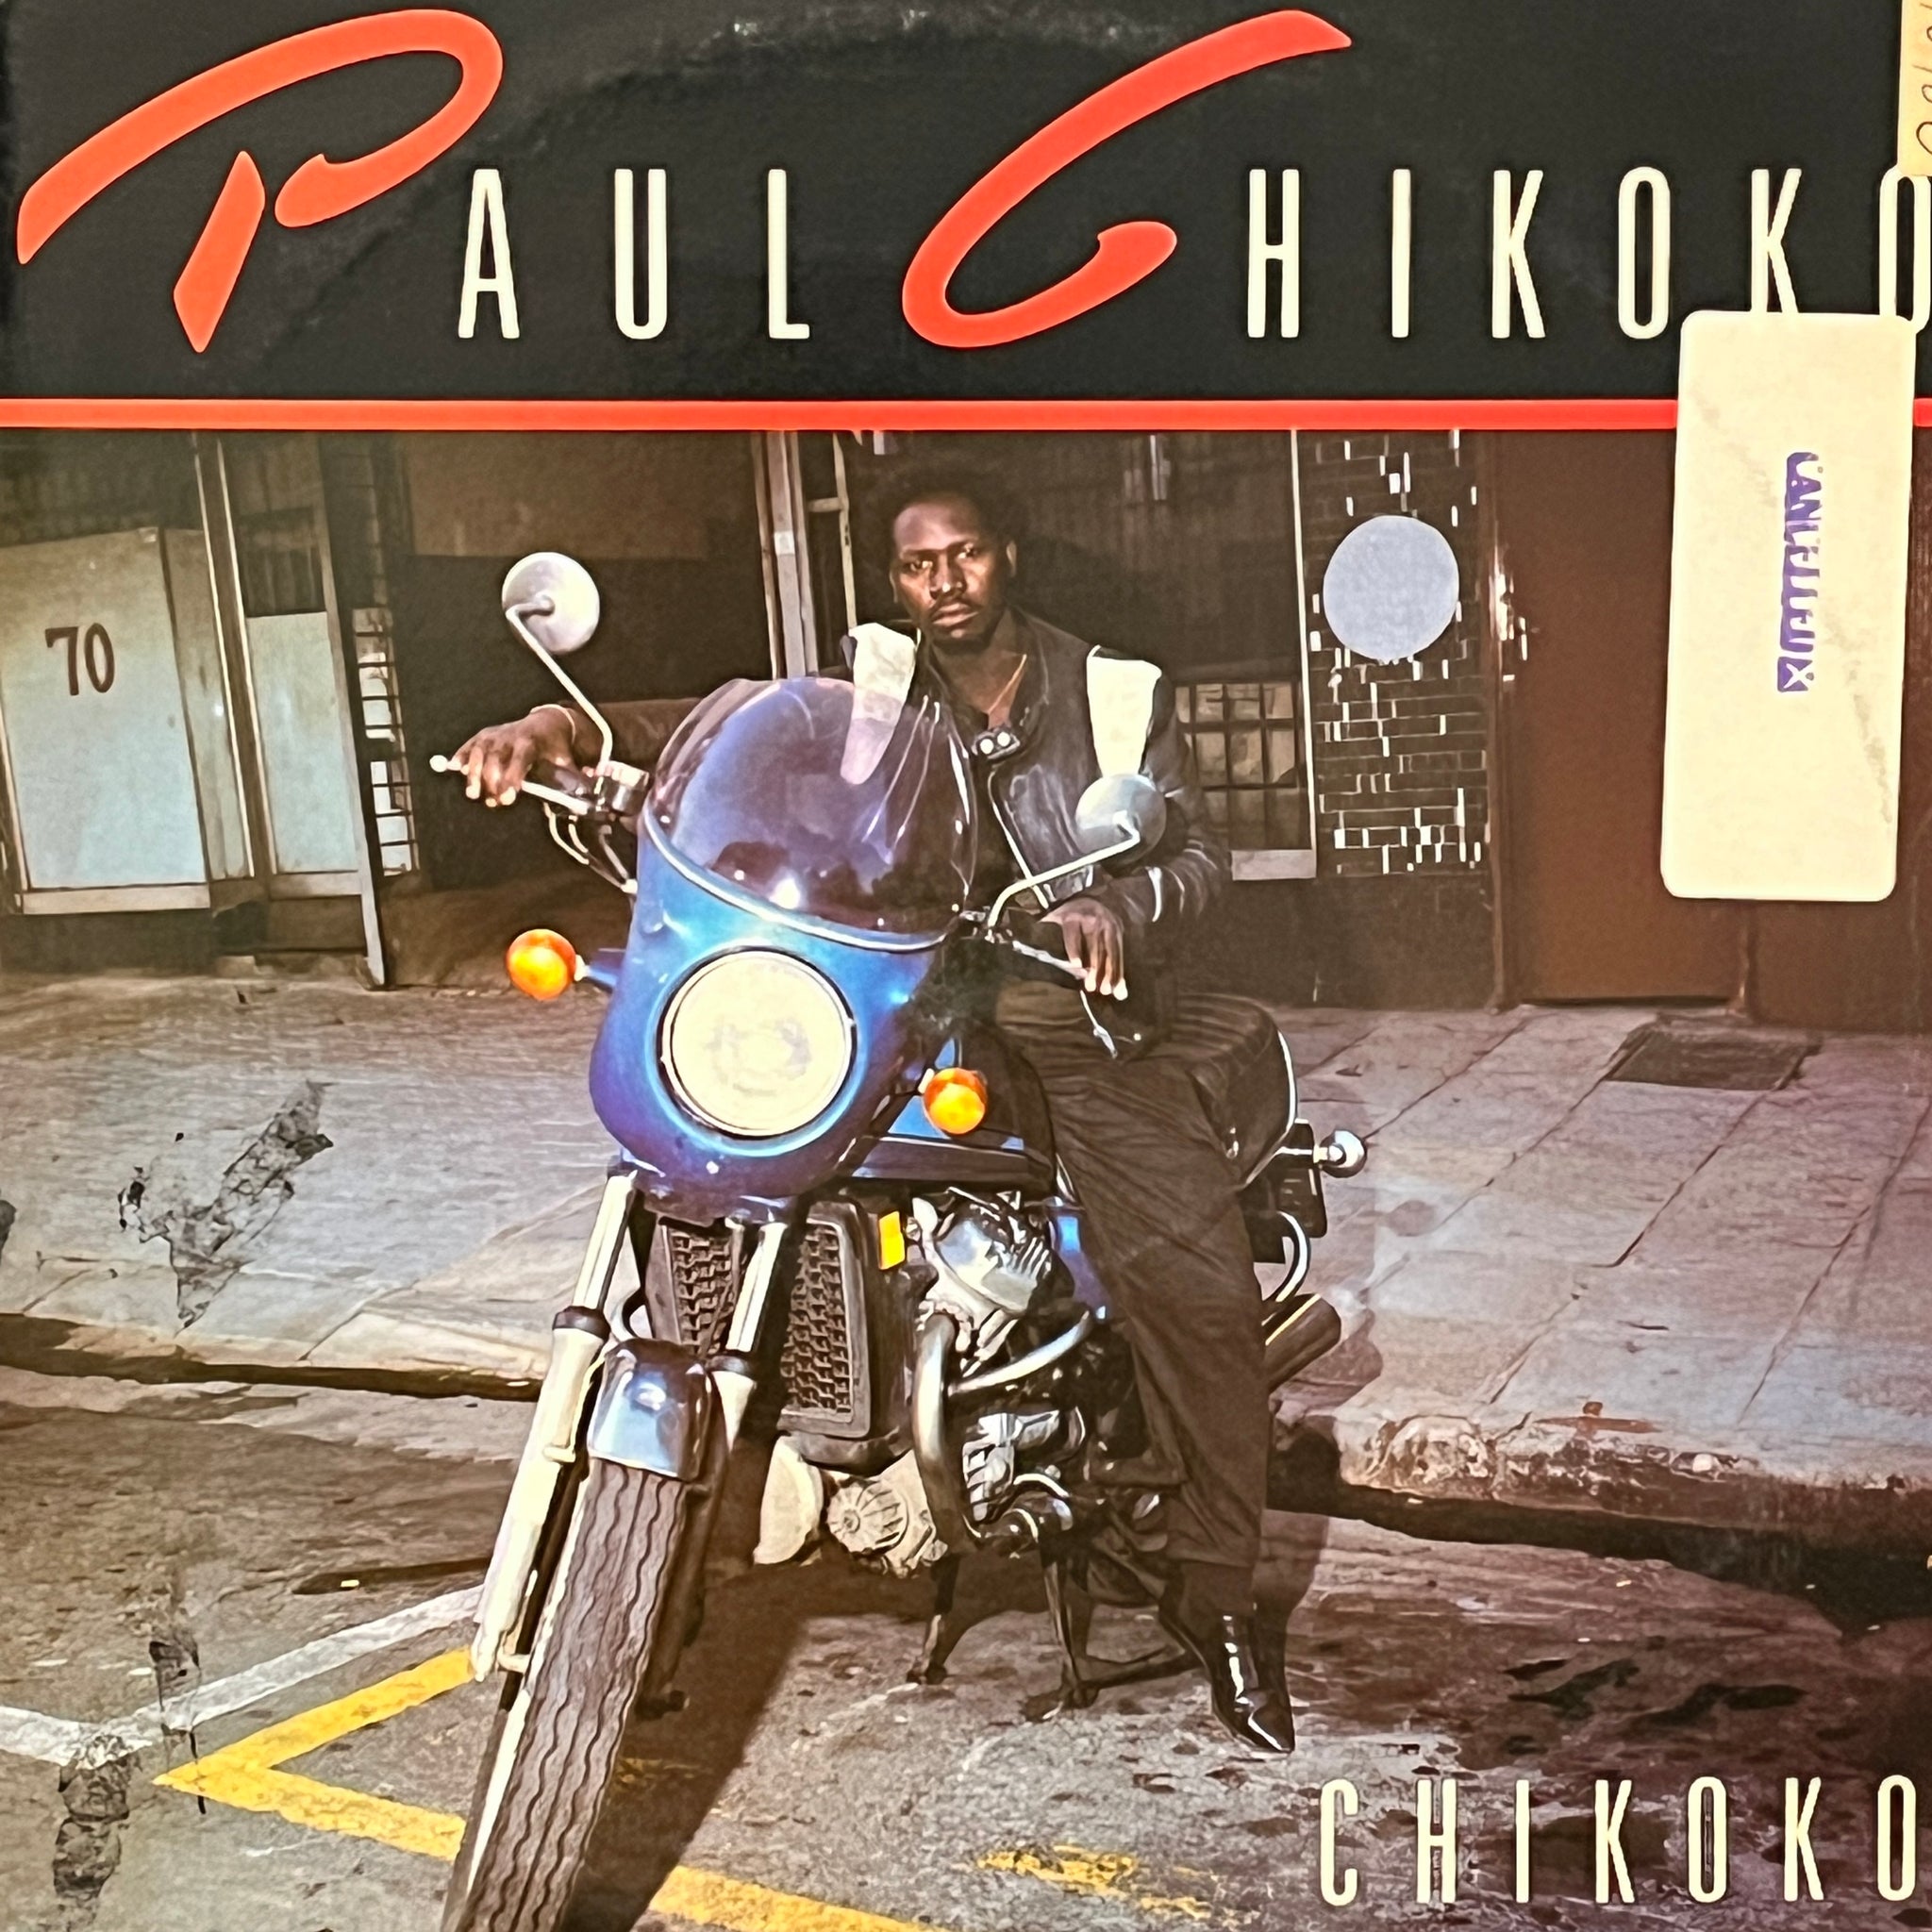 Paul Chikoko – Chikoko!